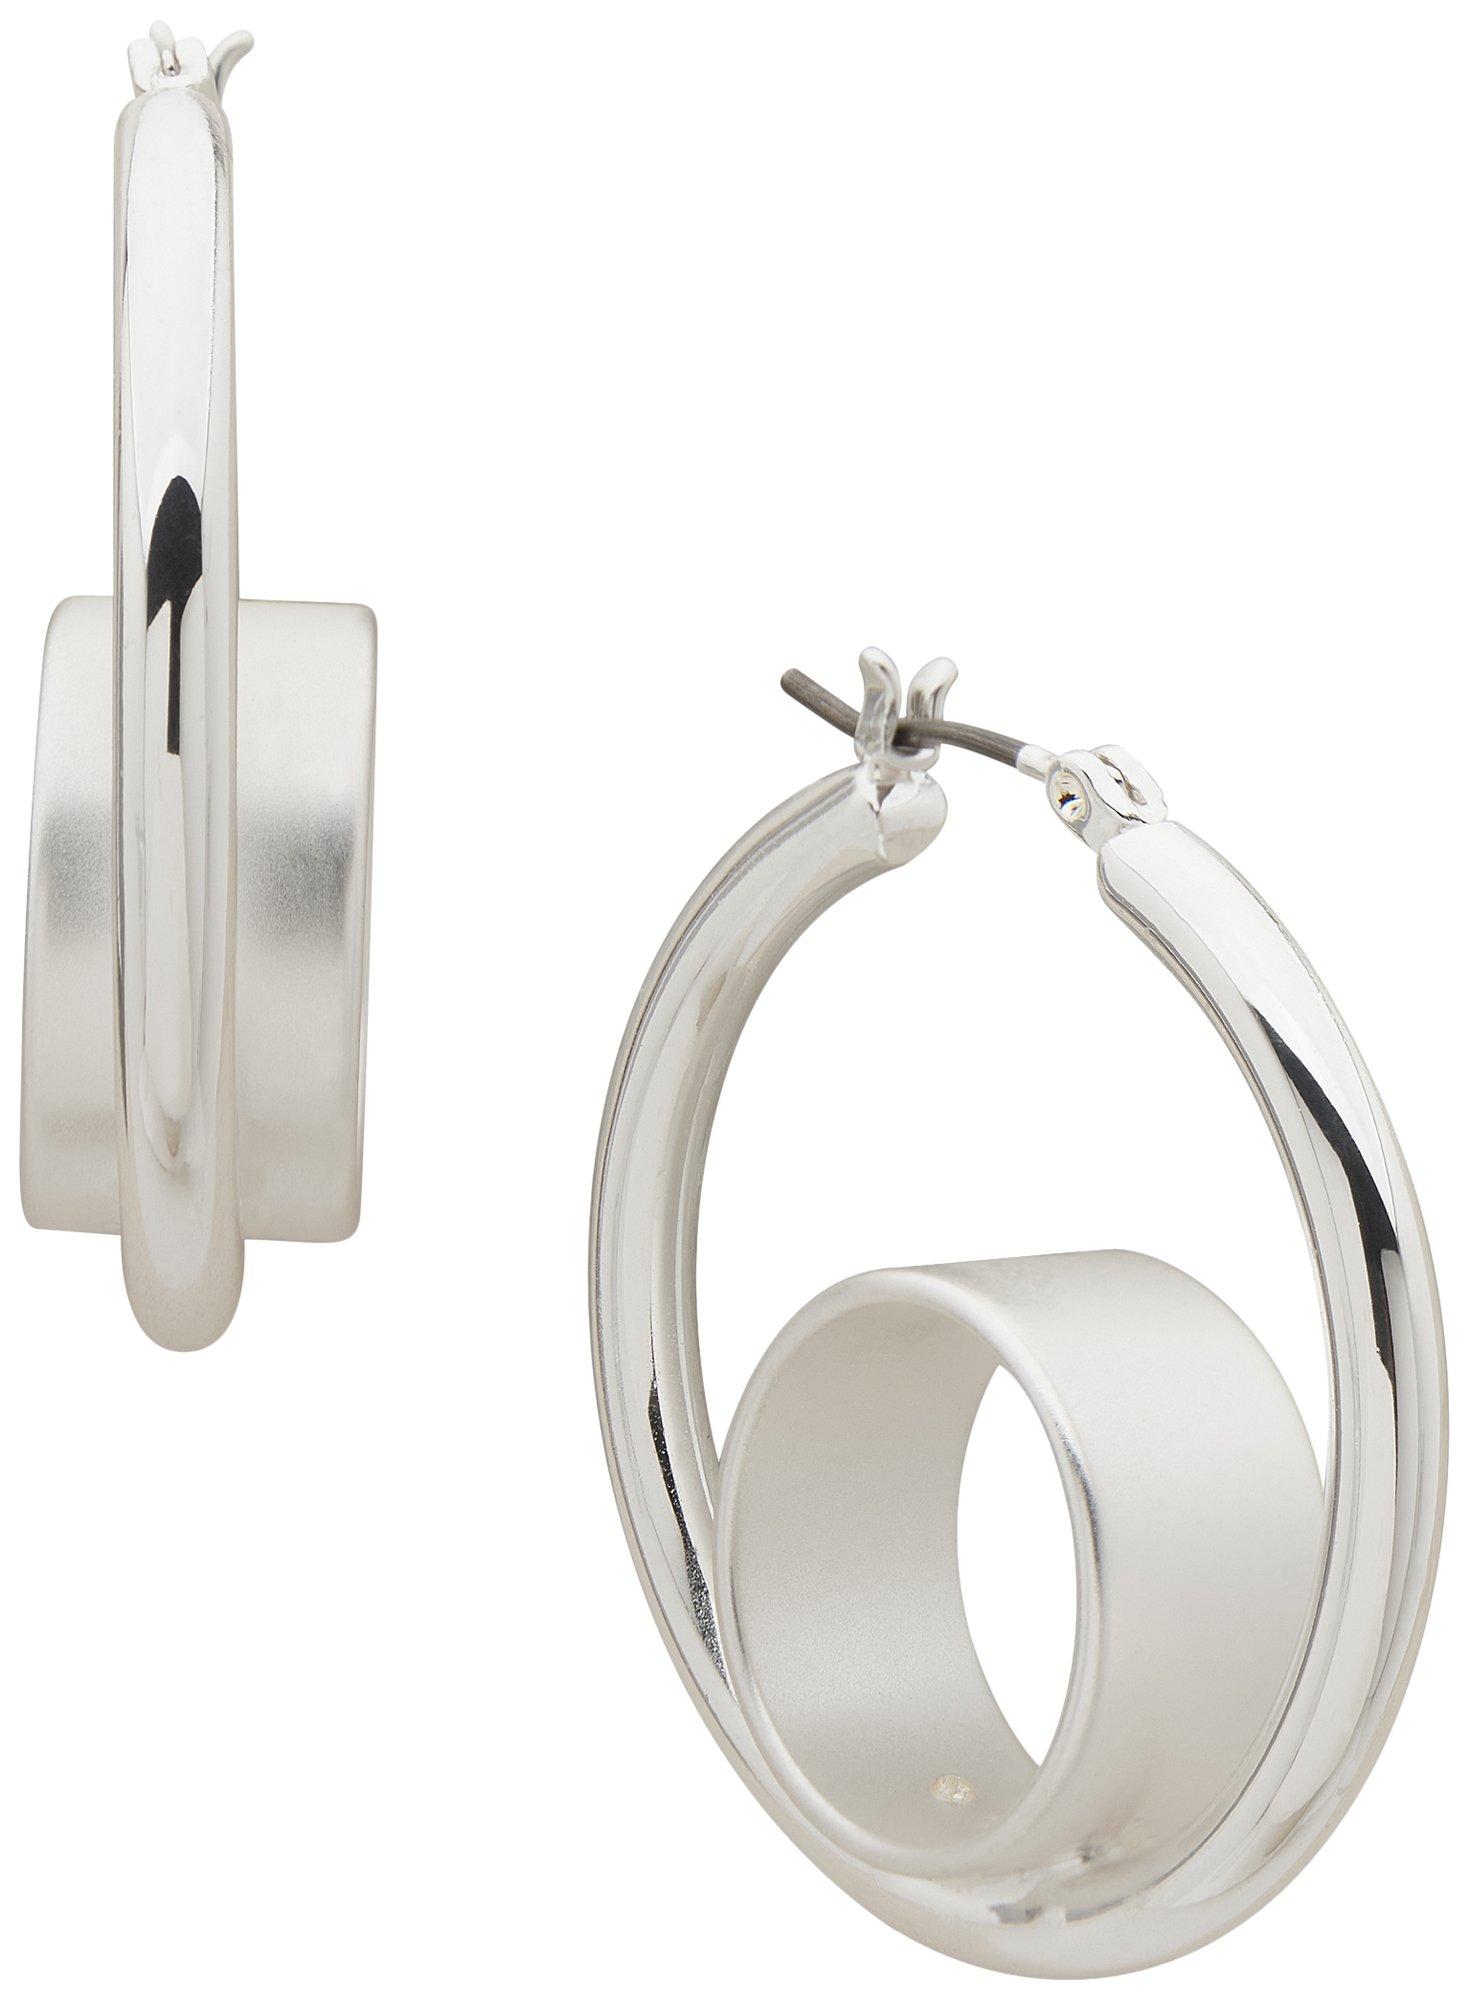 Nine West 1.25 In. Double Loop Silver Tone Hoop Earrings